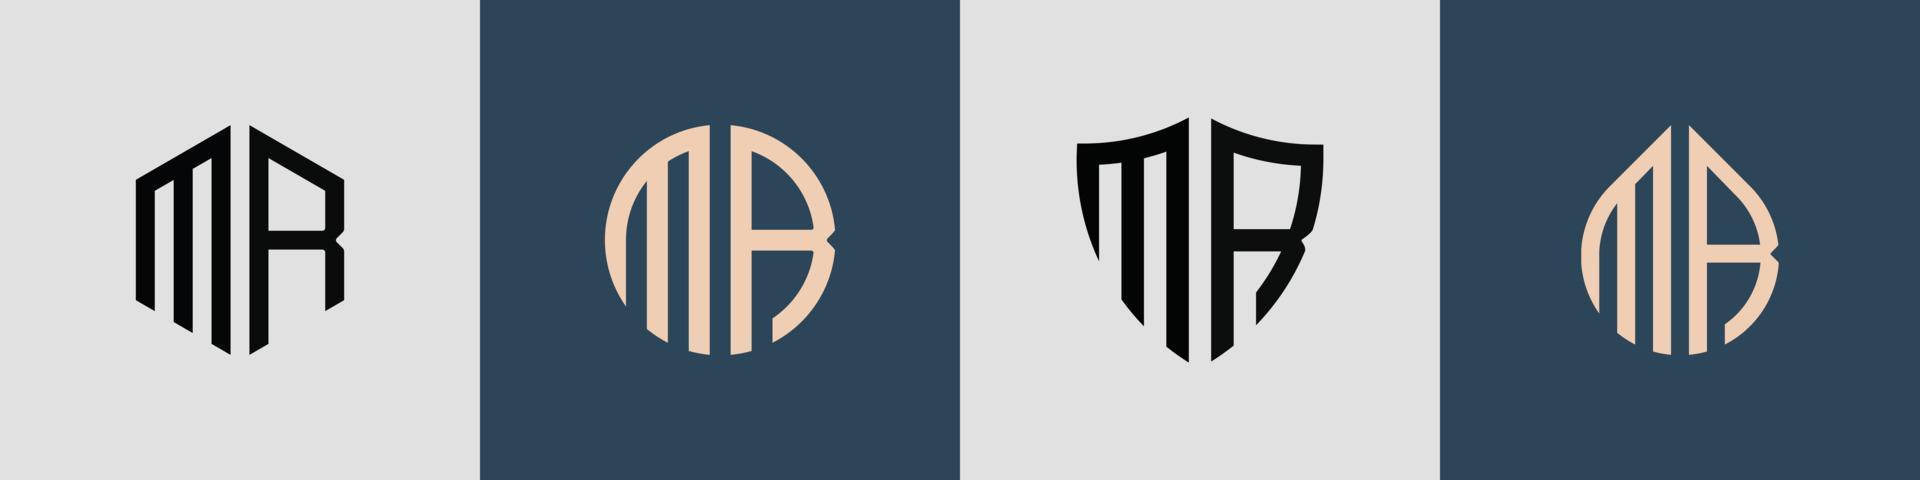 ensemble de conceptions de logo mr de lettres initiales simples créatives. vecteur